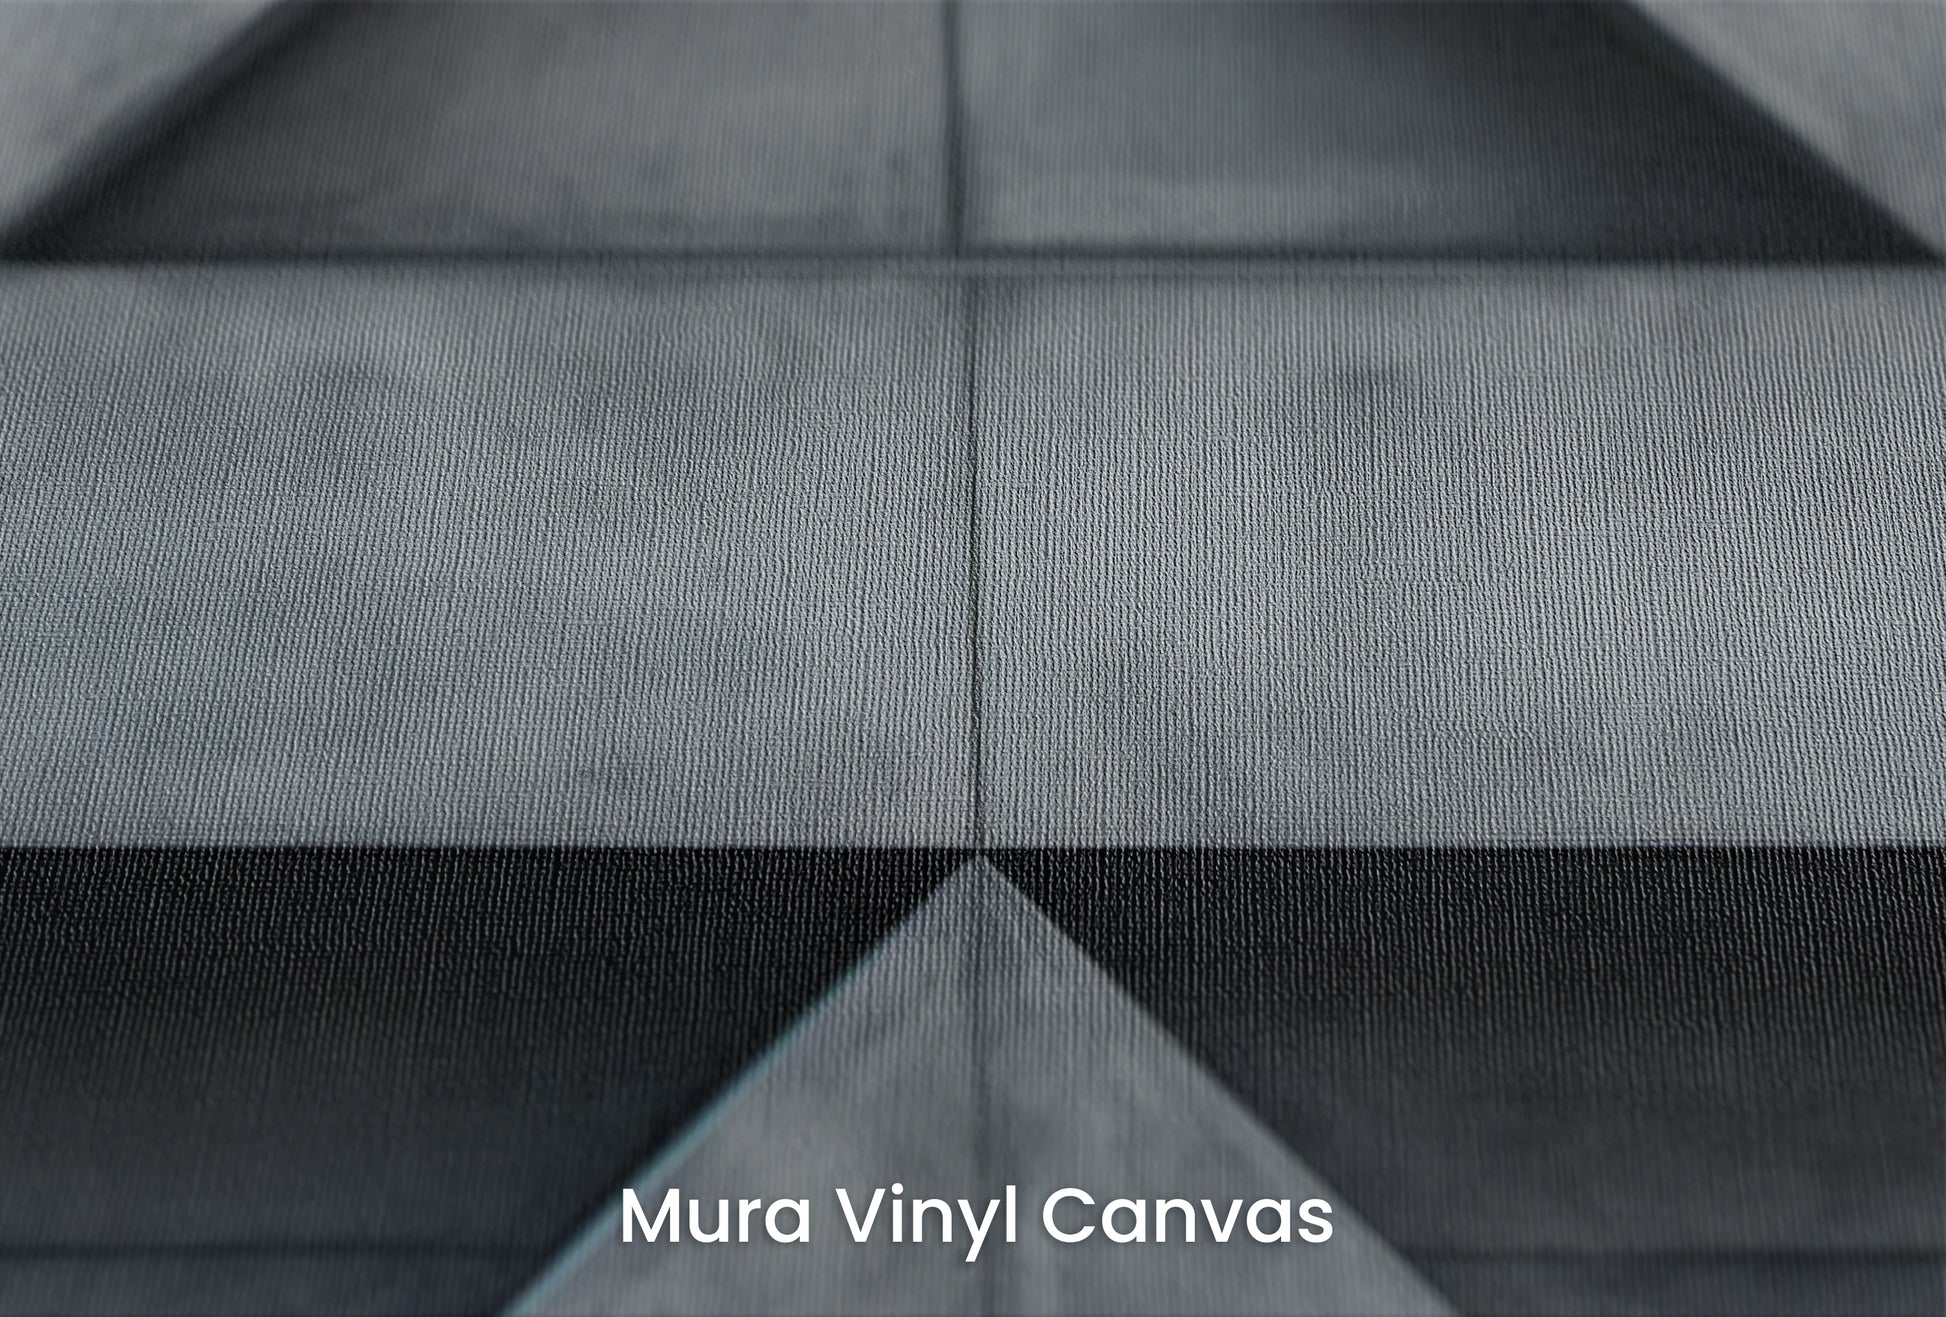 Zbliżenie na artystyczną fototapetę o nazwie Apex Elevation na podłożu Mura Vinyl Canvas - faktura naturalnego płótna.